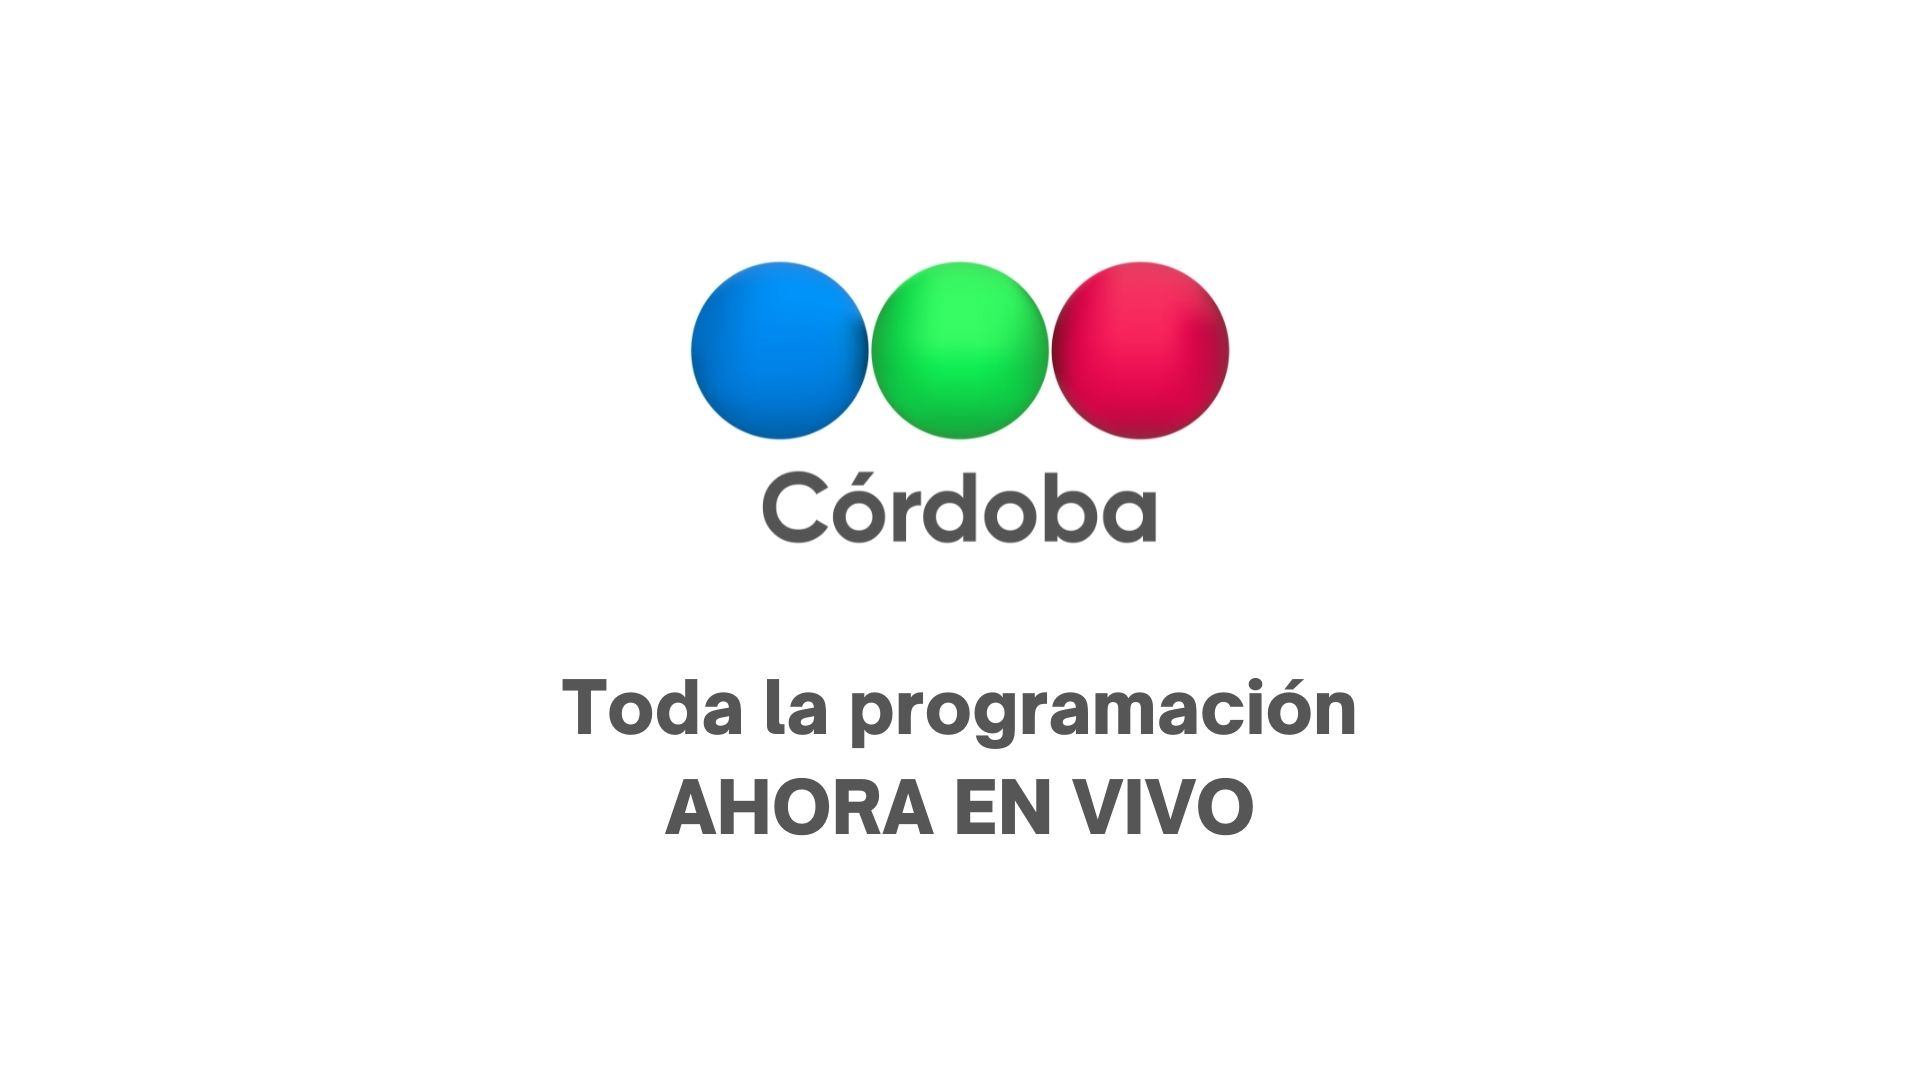 - Córdoba